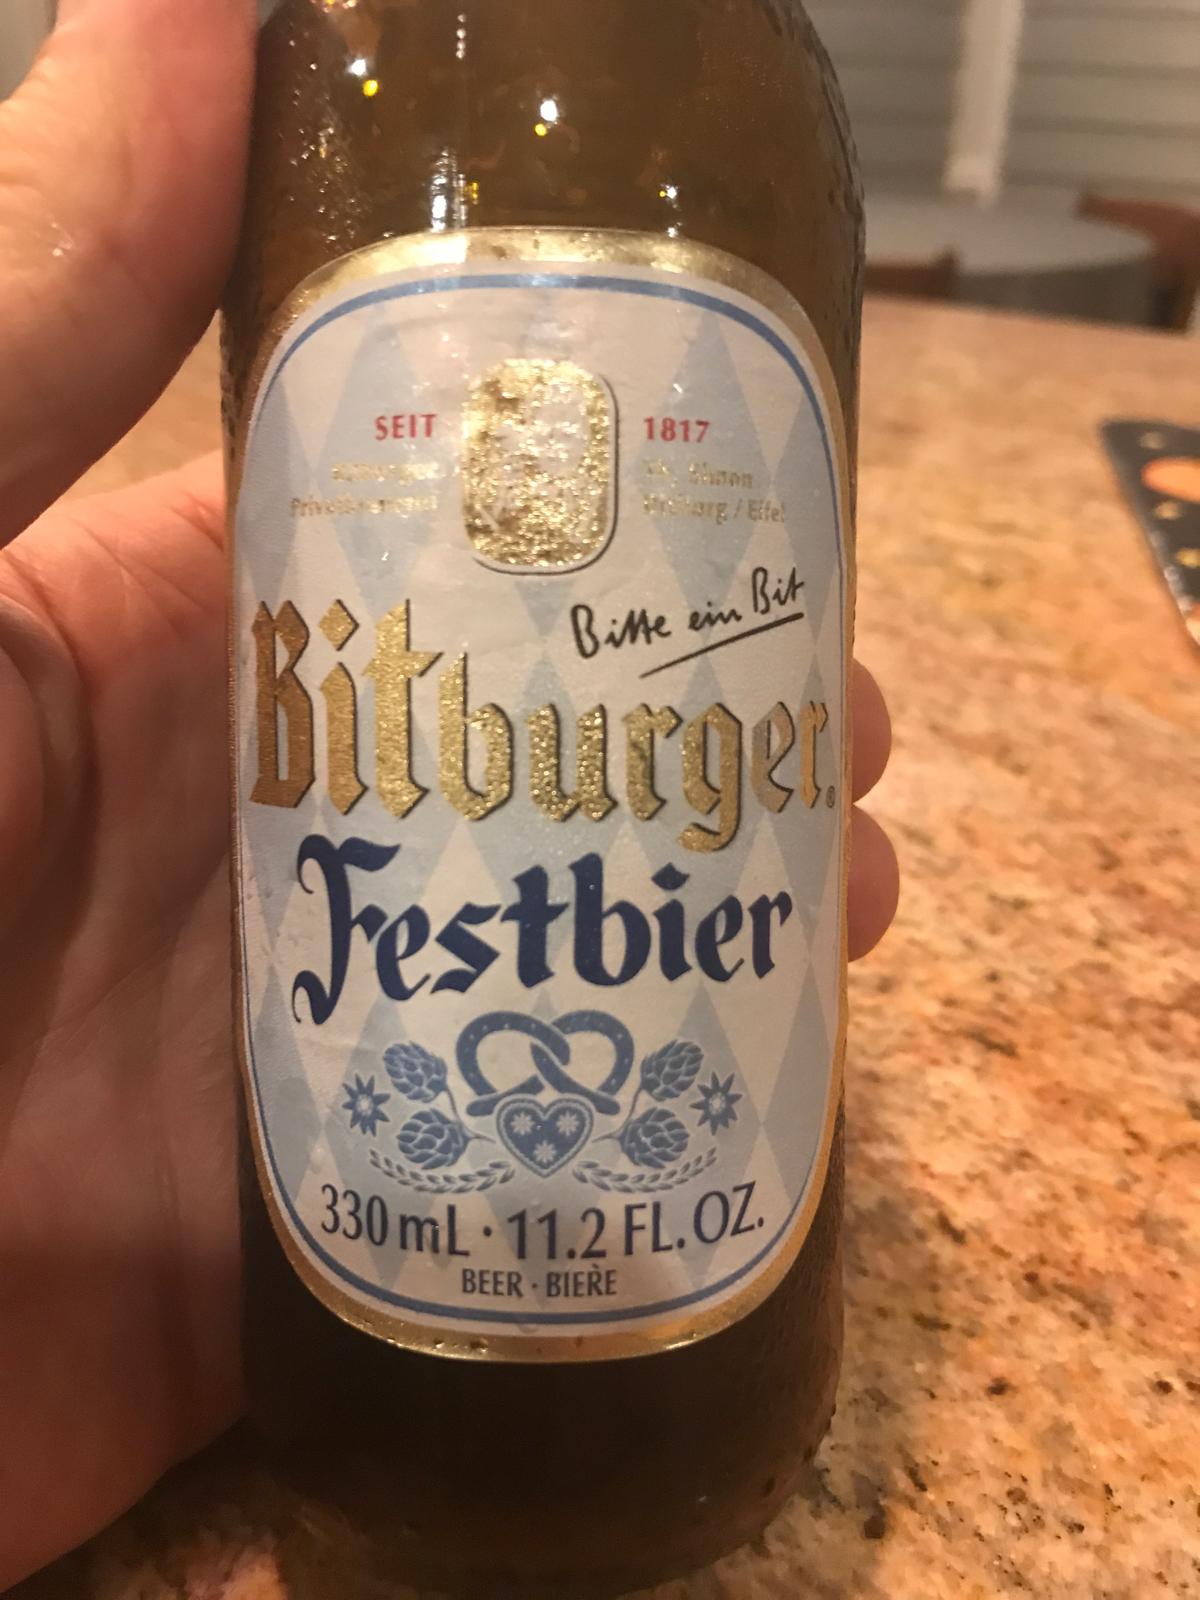 Bitburger Festbier